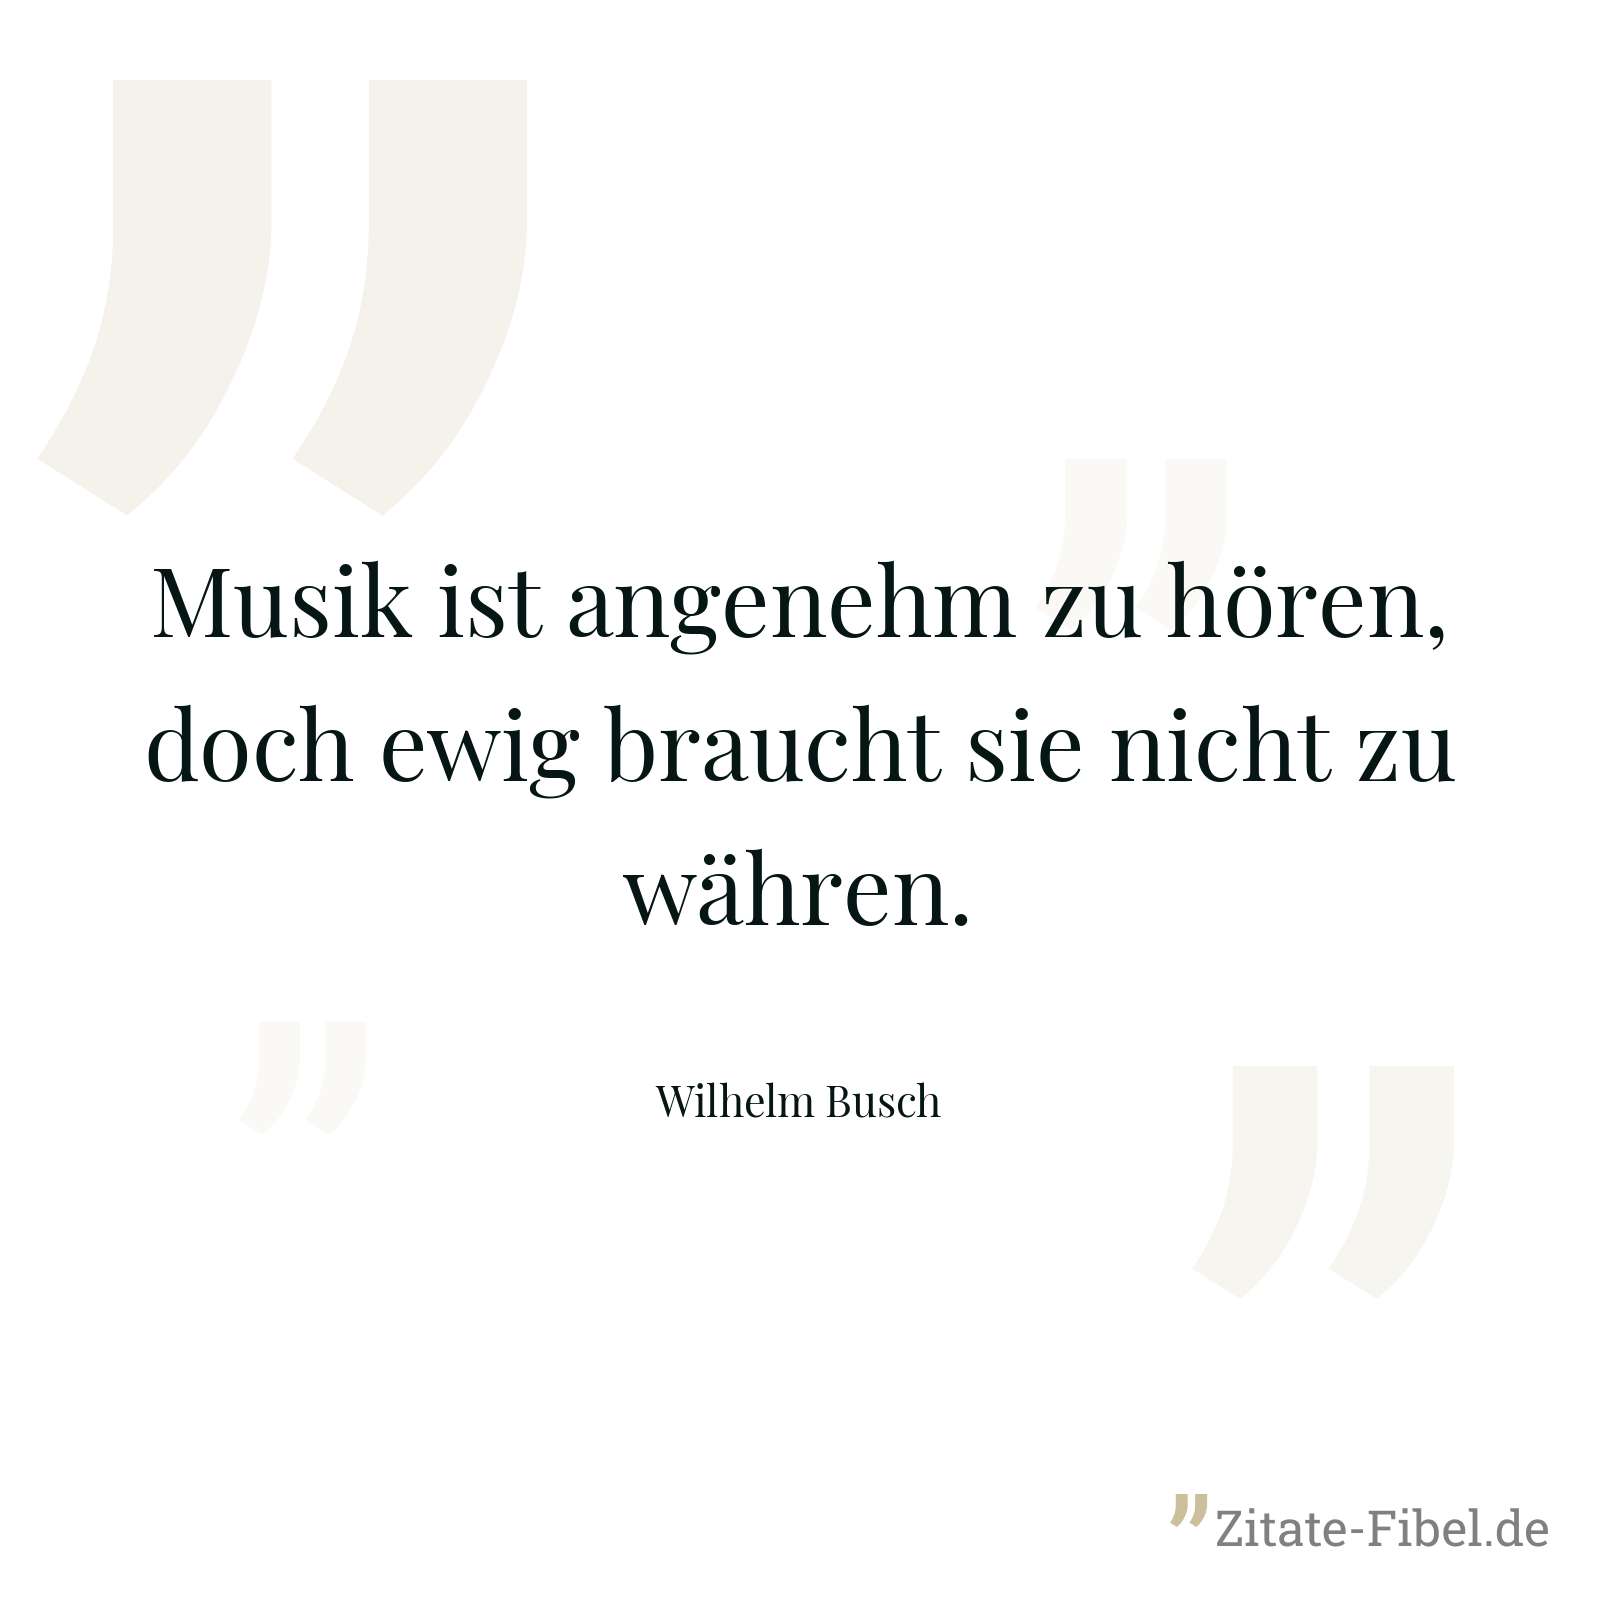 Musik ist angenehm zu hören, doch ewig braucht sie nicht zu währen. - Wilhelm Busch